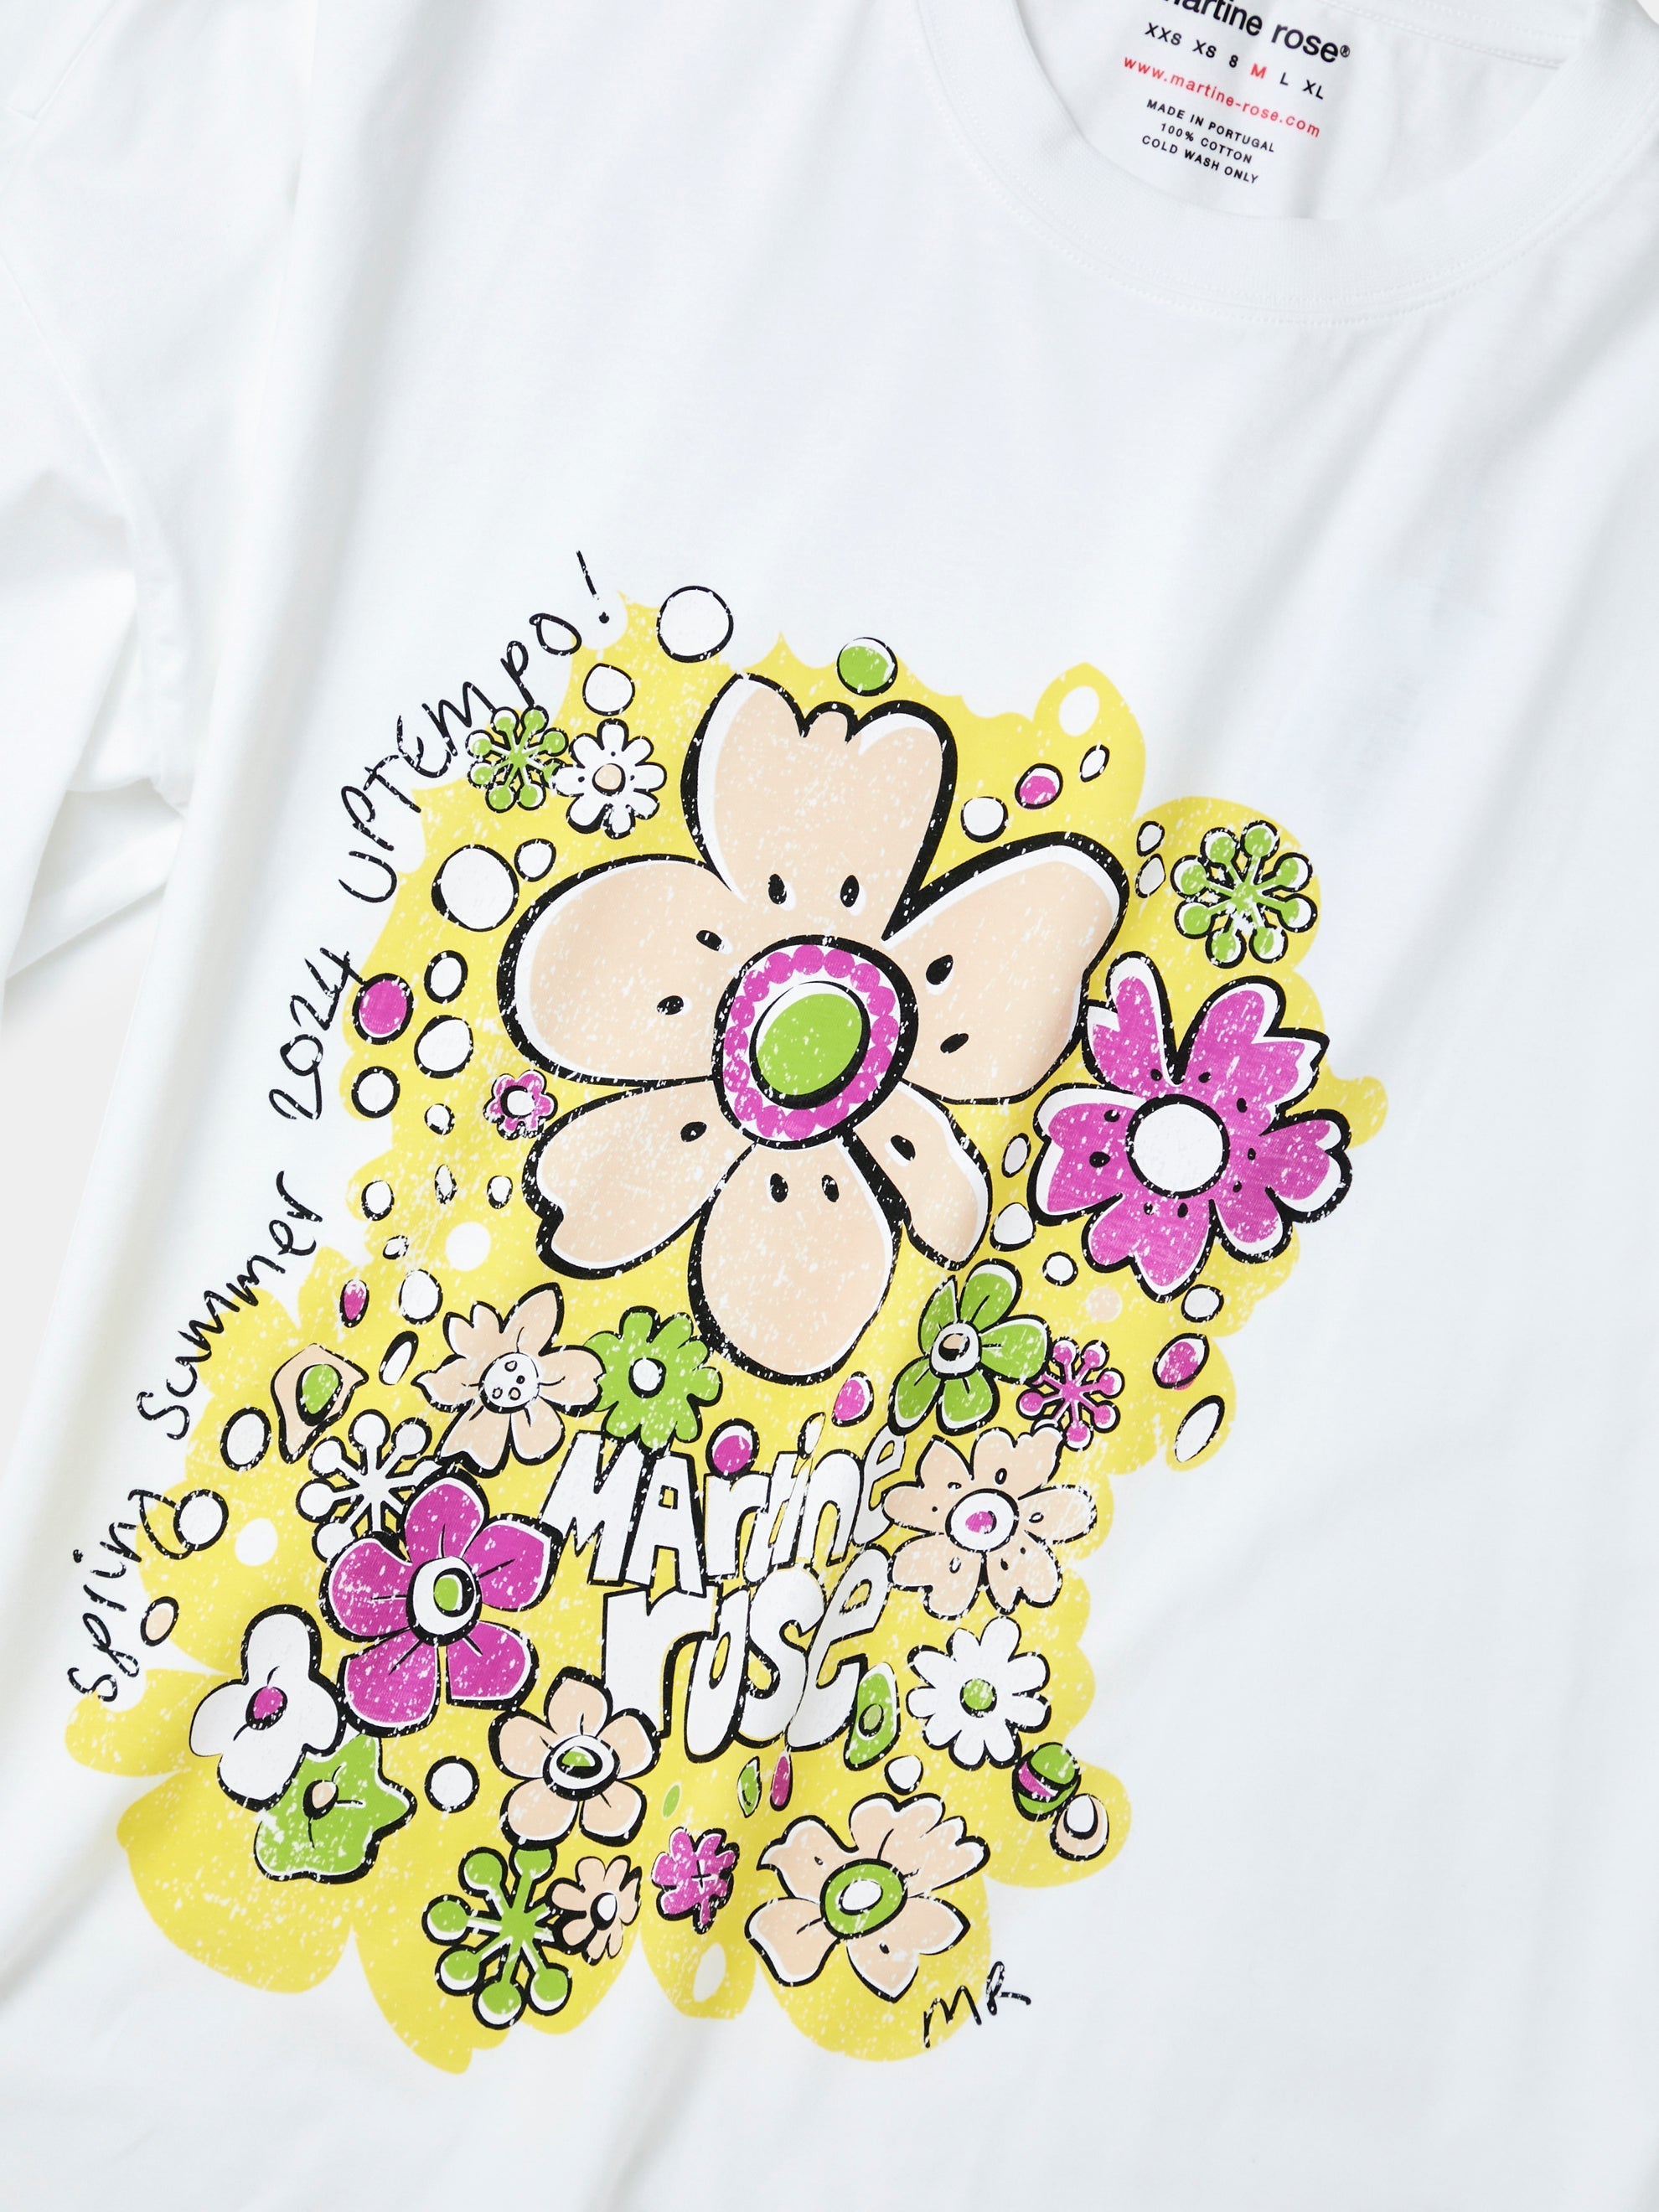 Oversized L/S T-Shirt (Festival Flower)